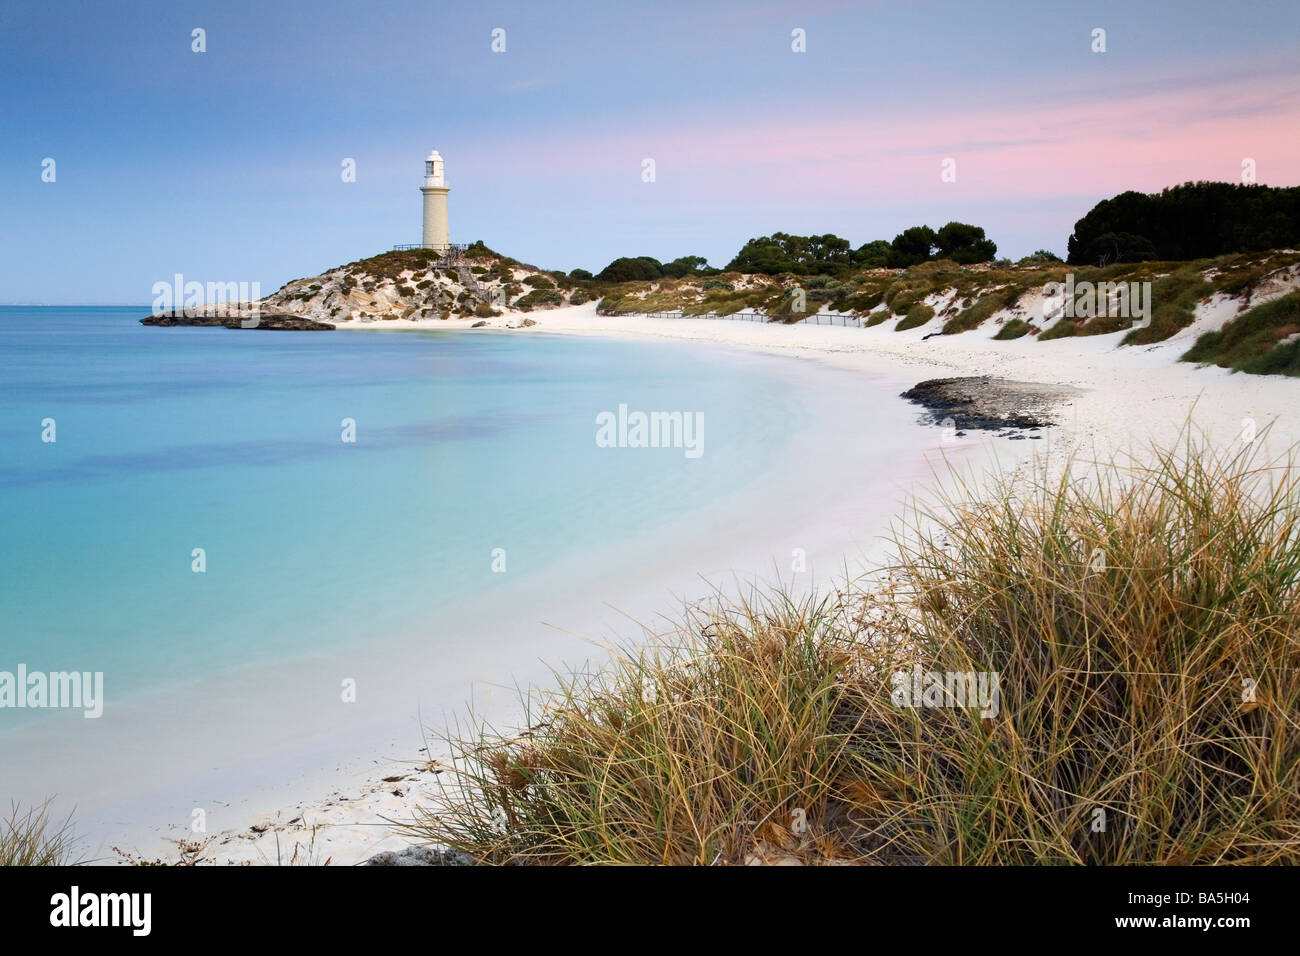 Afficher le long de la plage de Pinky à Bathurst phare au crépuscule. Rottnest Island, Australie occidentale, Australie Banque D'Images